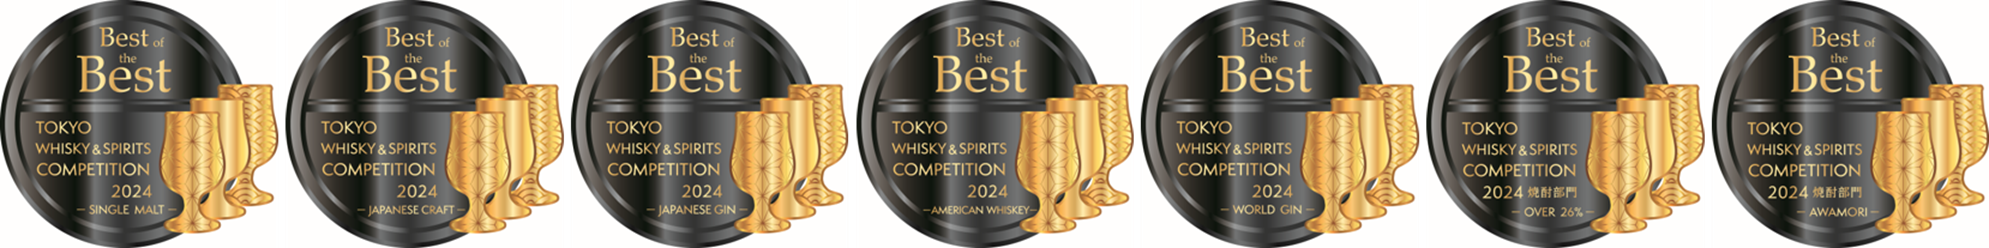 『東京ウイスキー&スピリッツコンペティション（TWSC）2024』授賞式　7月31日（水）開催